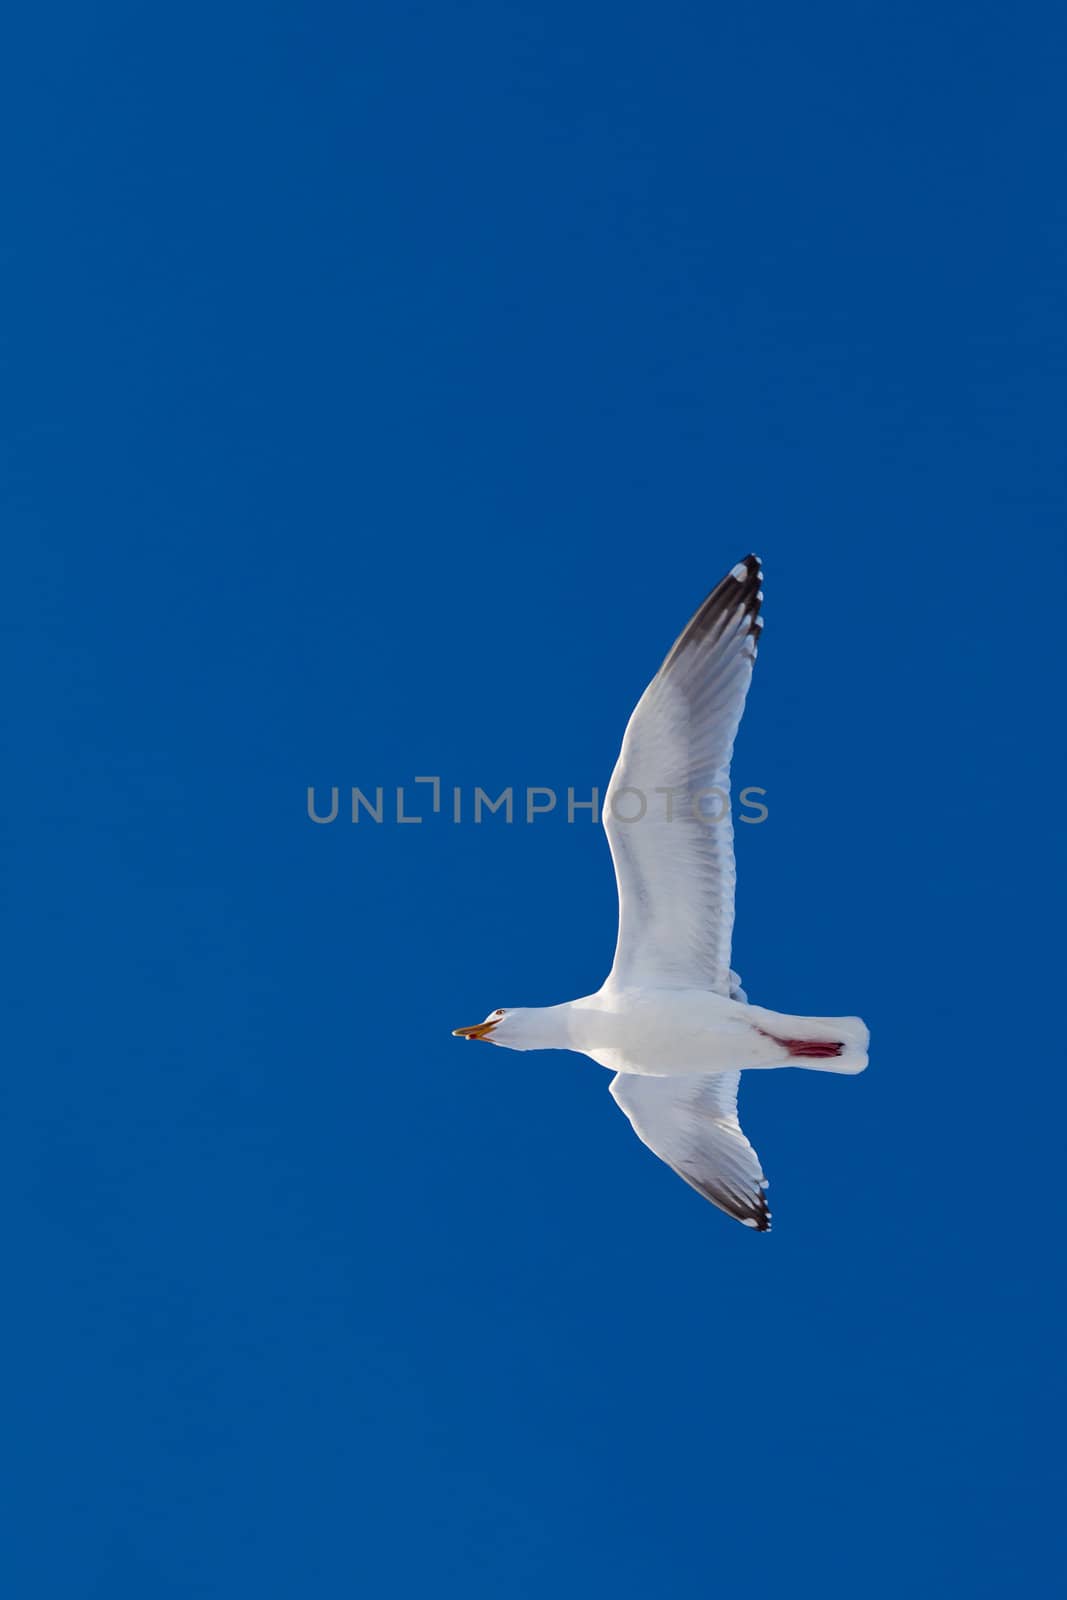 Calling herring gull flying in blue sky by PiLens